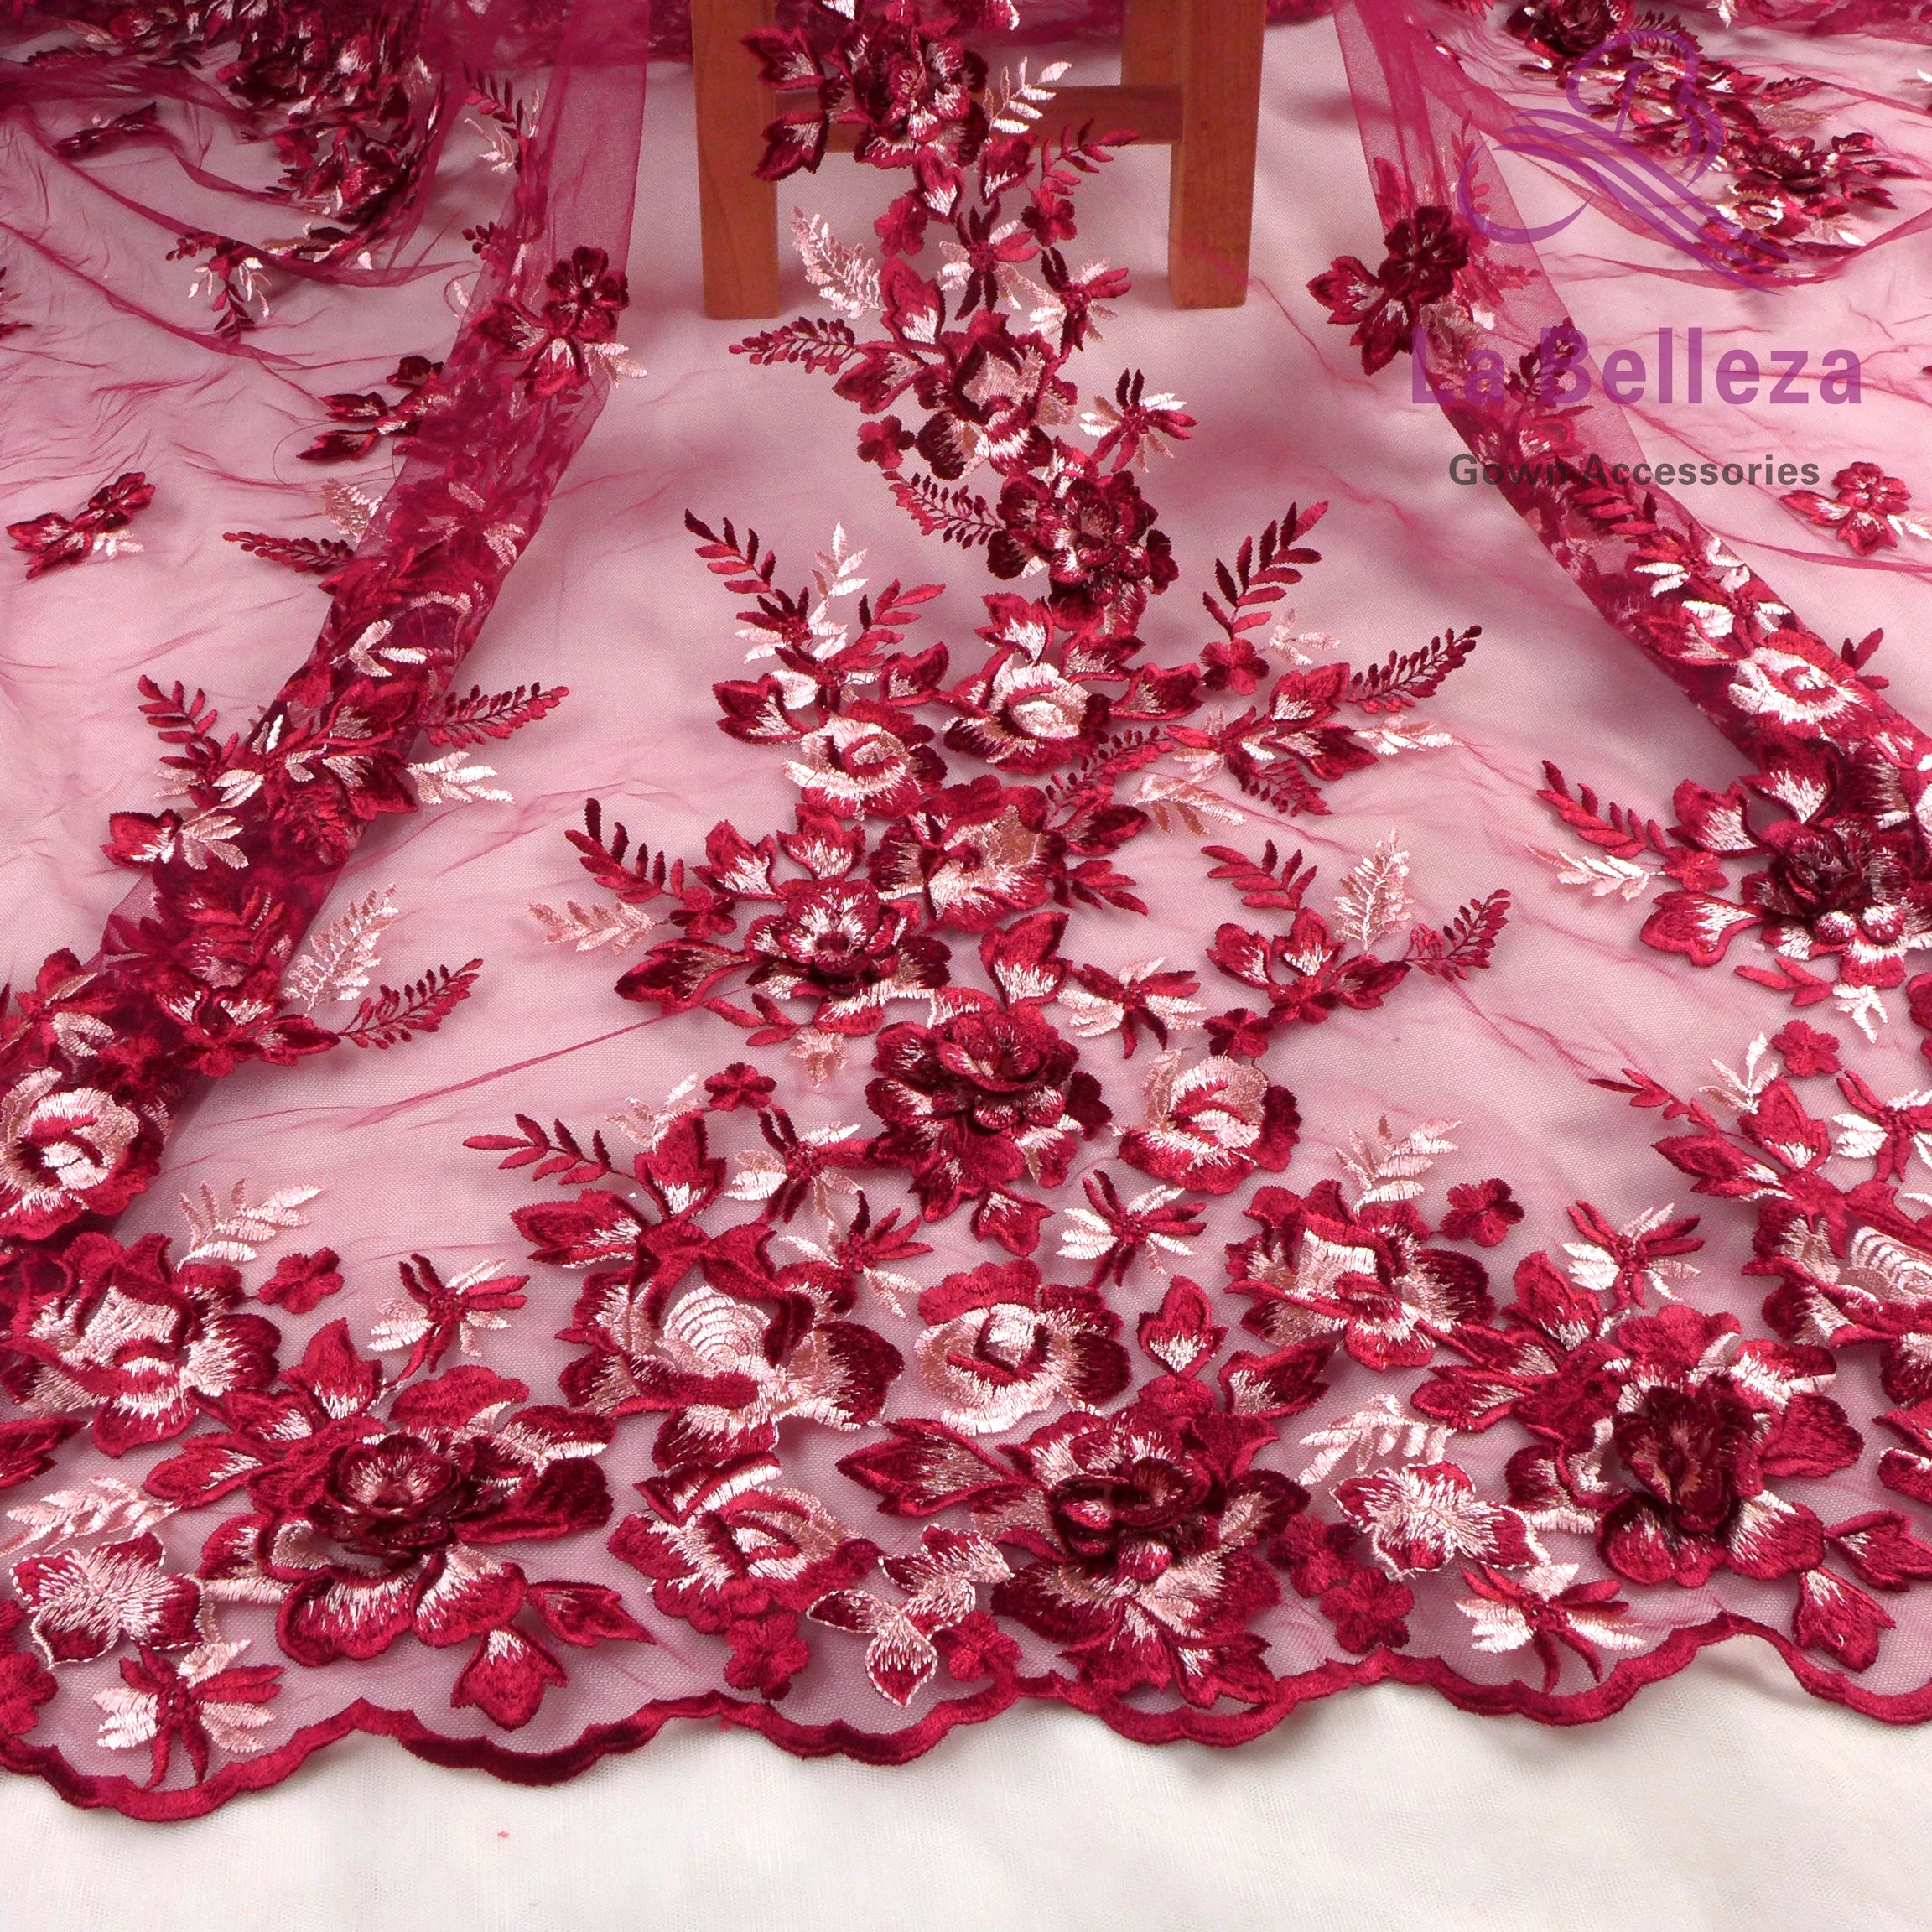 La Belleza дизайн кружева, вино 3D цветы кружева ткань, синий, розовый 3D Цветы Кружева Ткань вечернее платье кружевная ткань 1 ярд